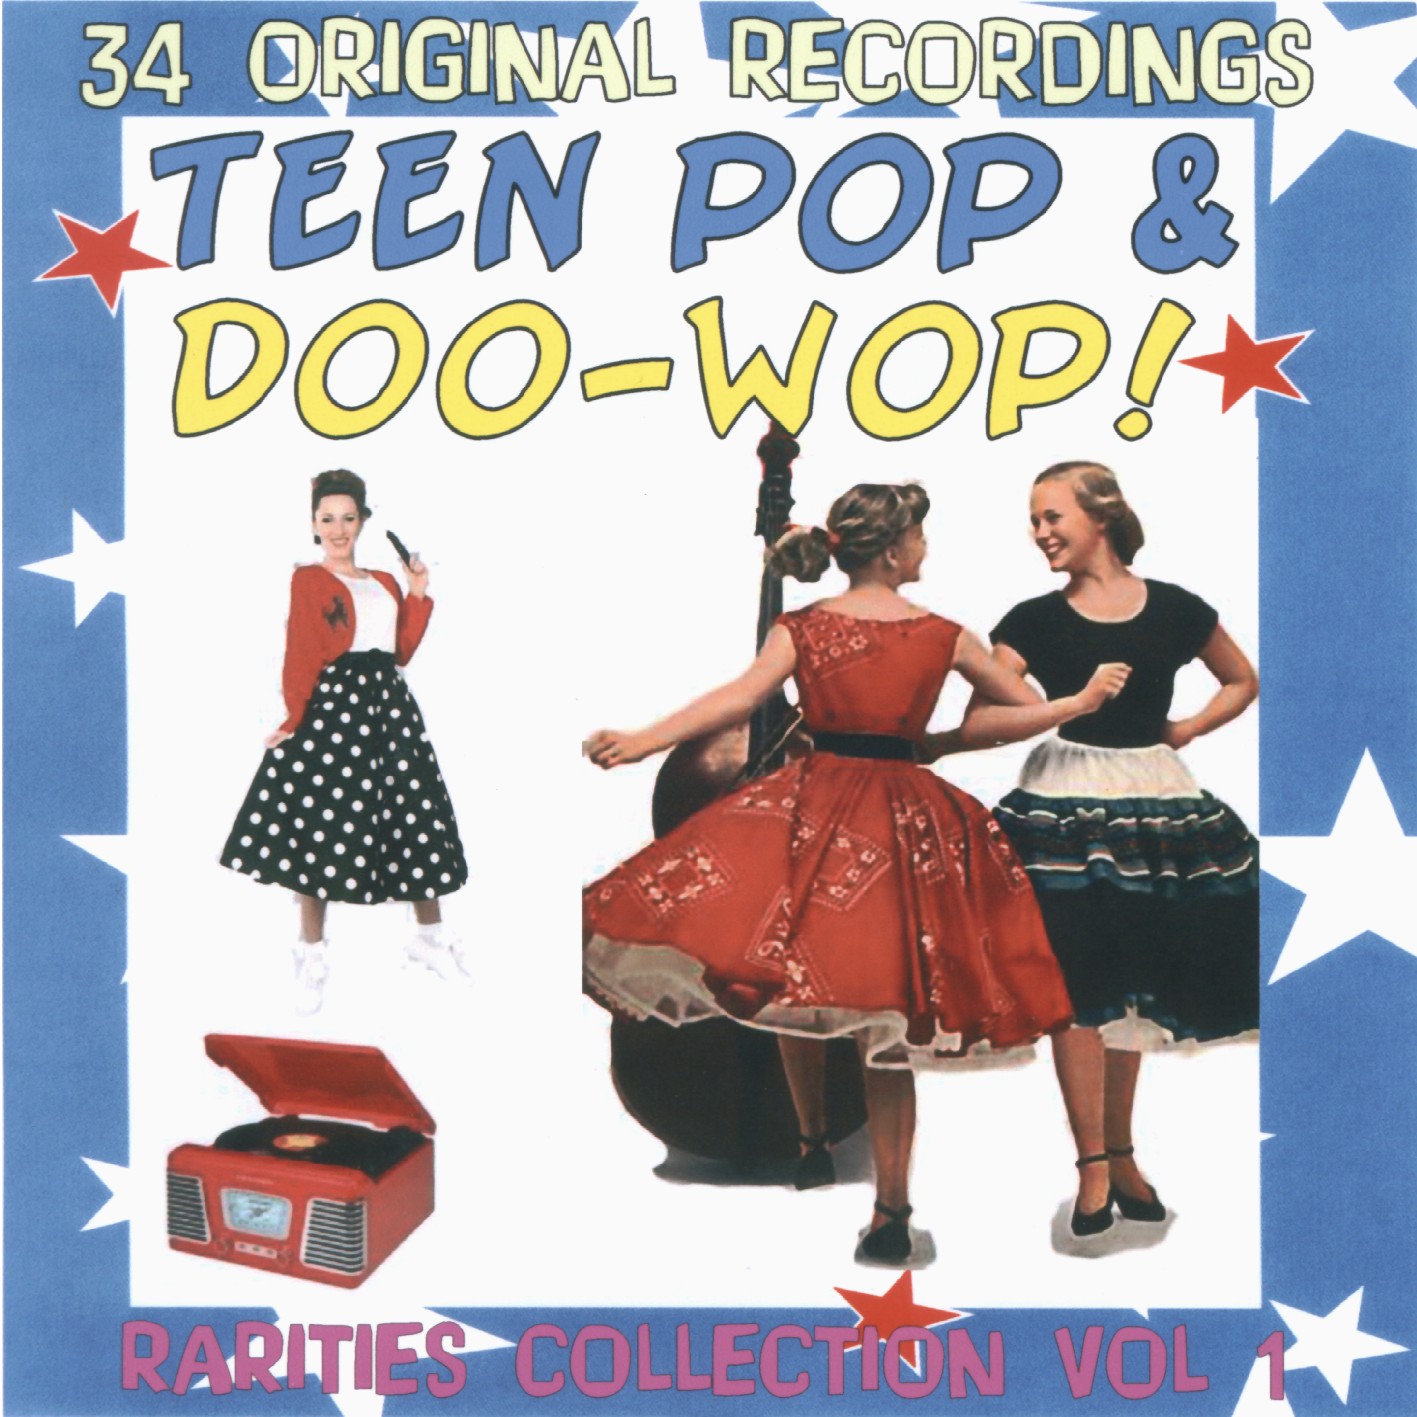 TeenPop & Doo-Wop Volumes 1 to 6